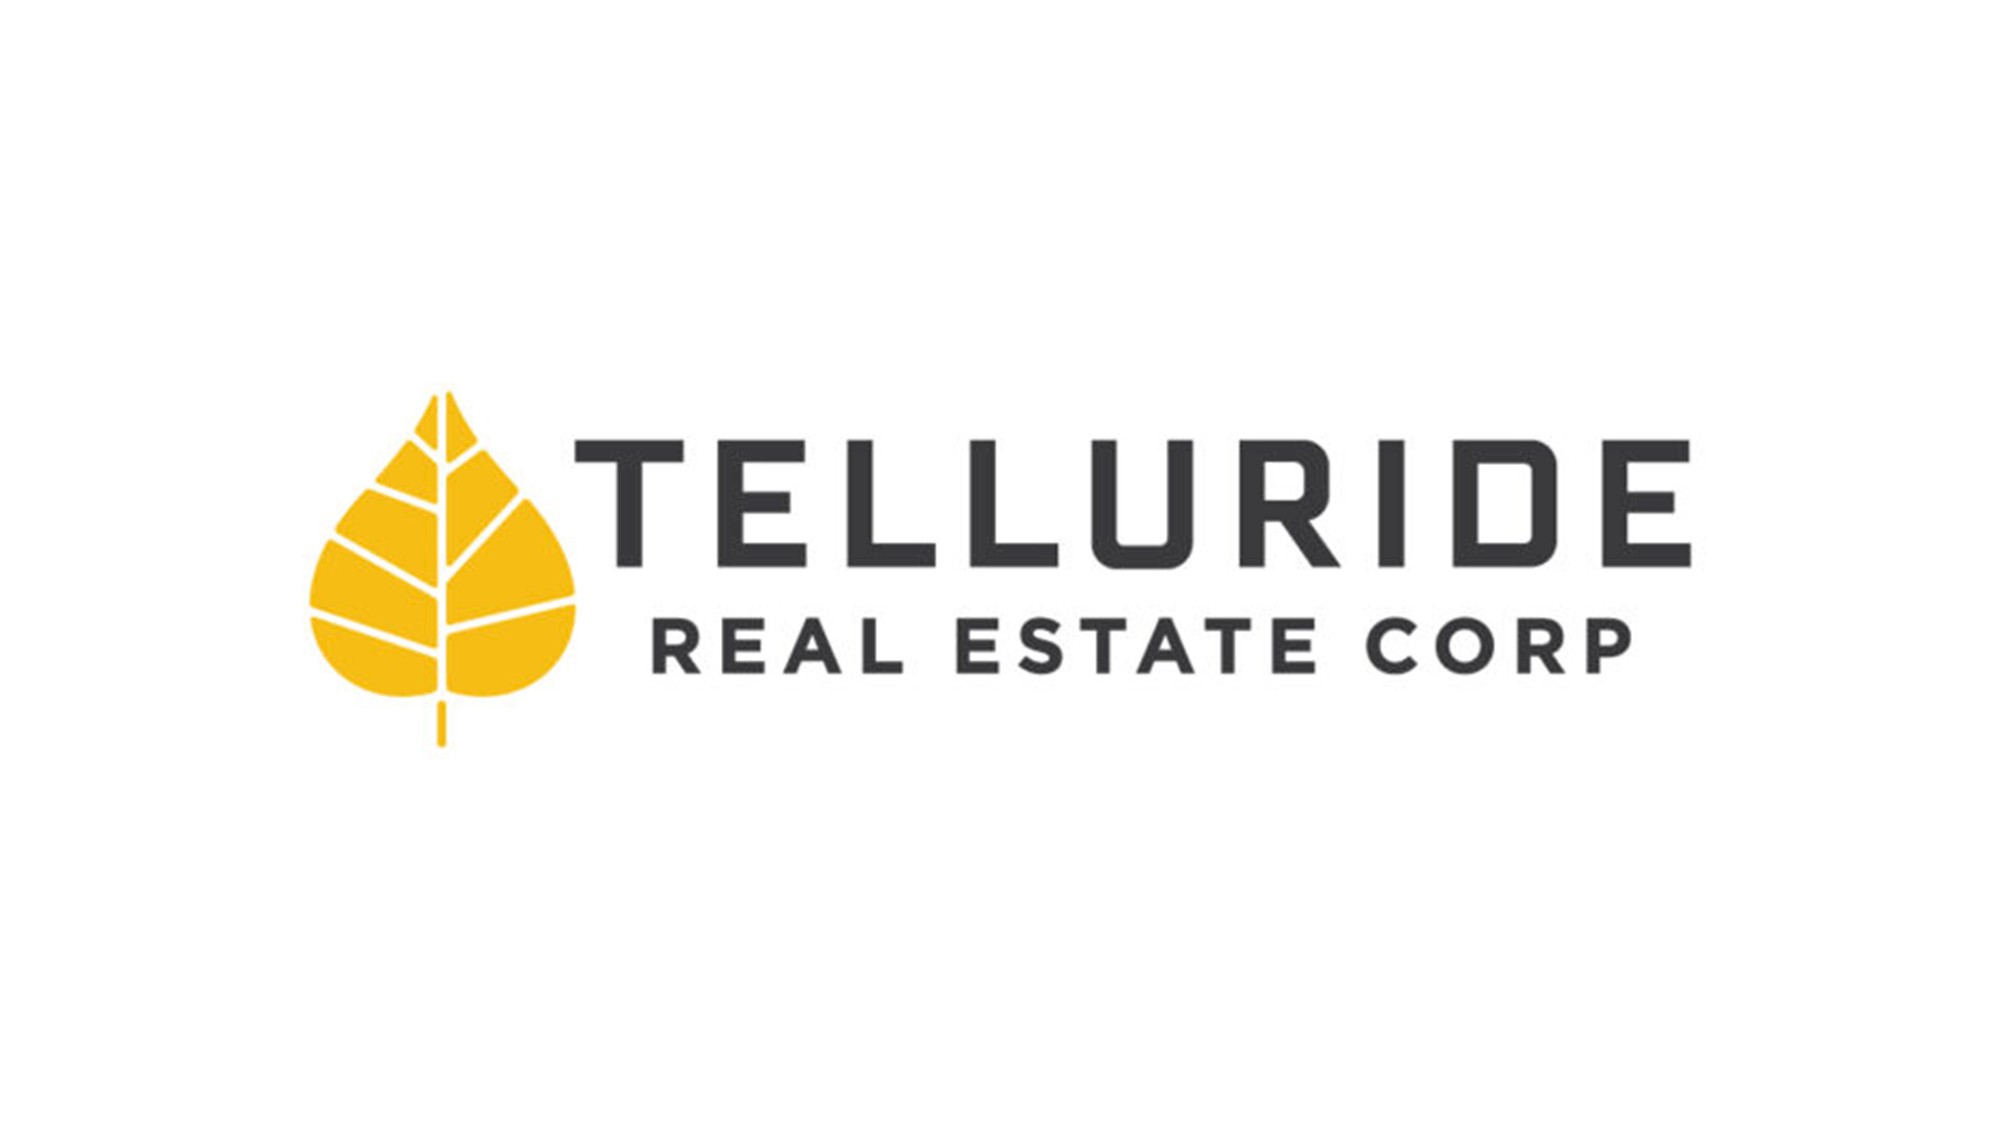 Telluride Real Estate Corp. Visit Telluride